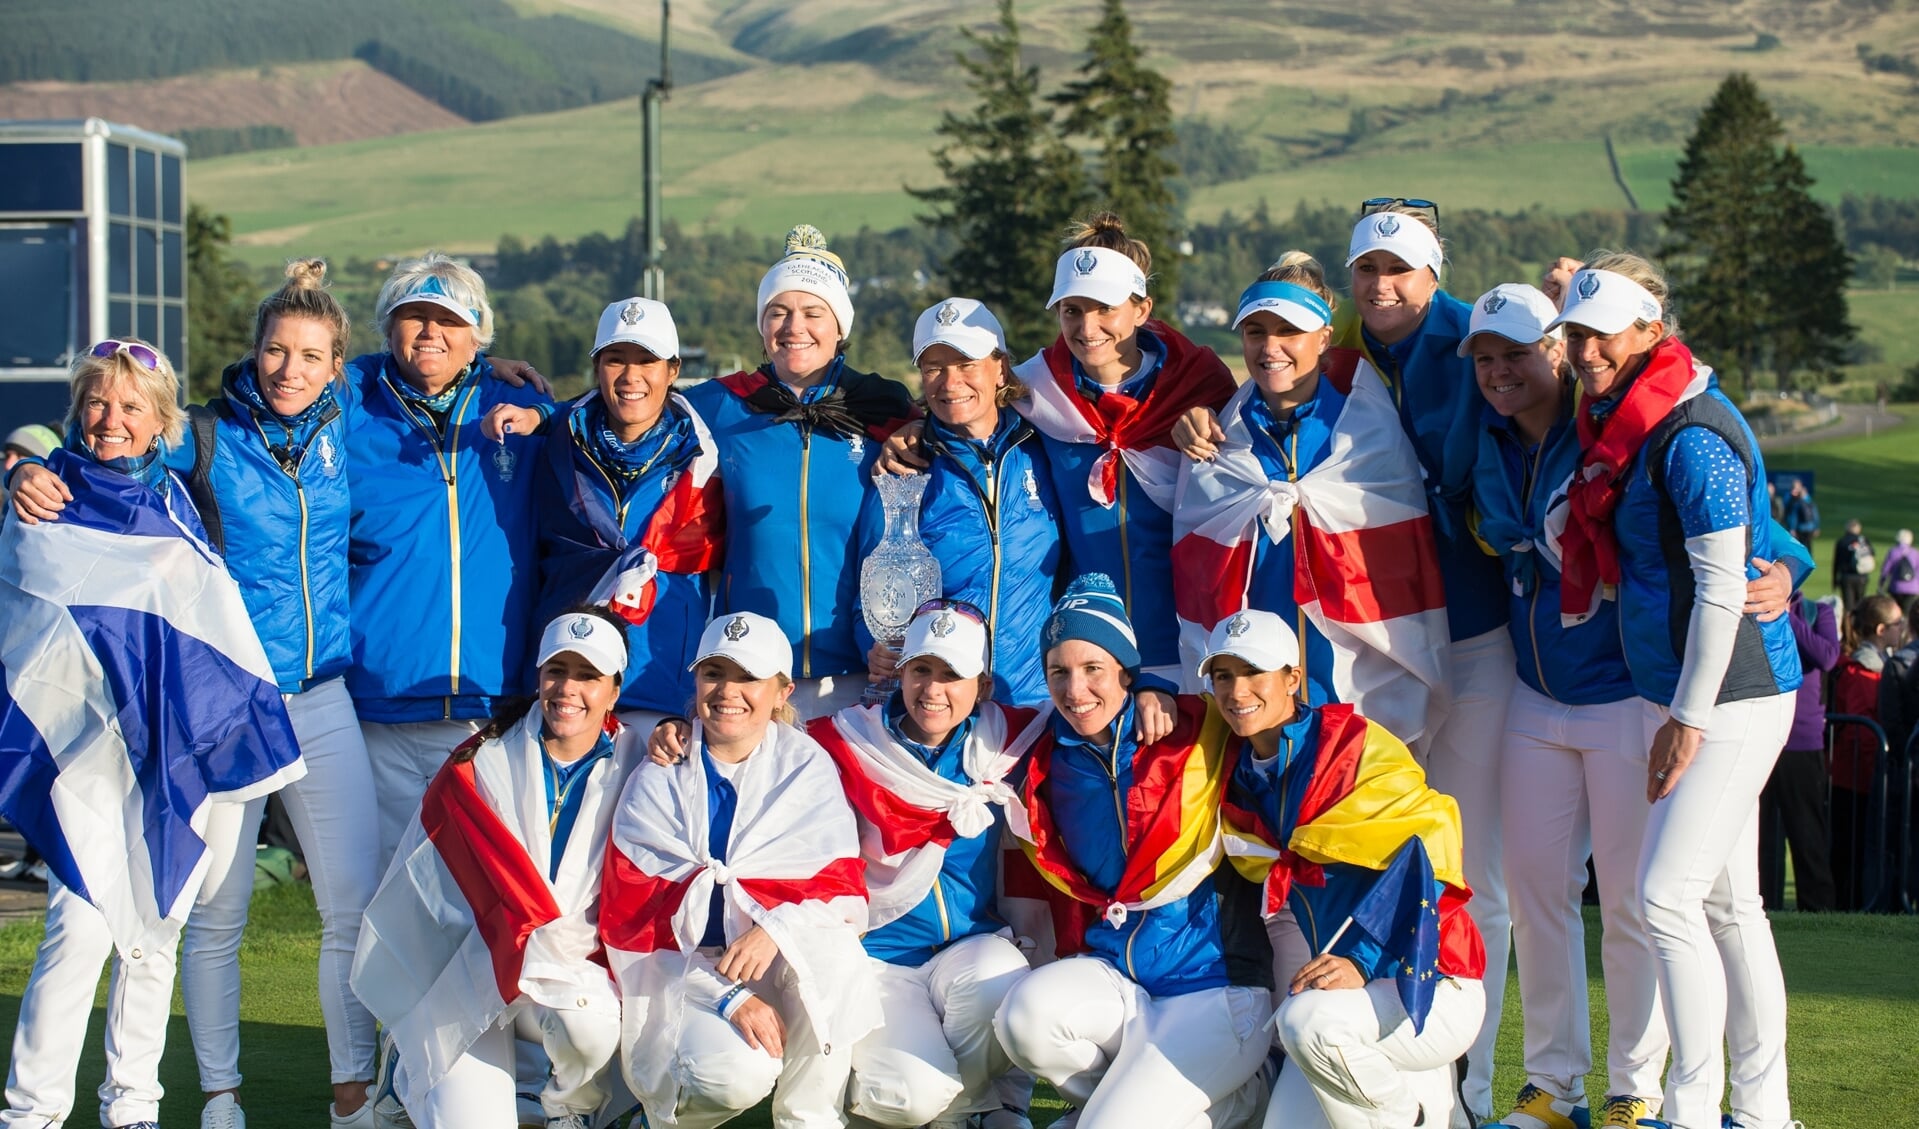 Anne van Dam (boven vijfde van rechts) in het winnende Europese team van de Solheim Cup 2019.